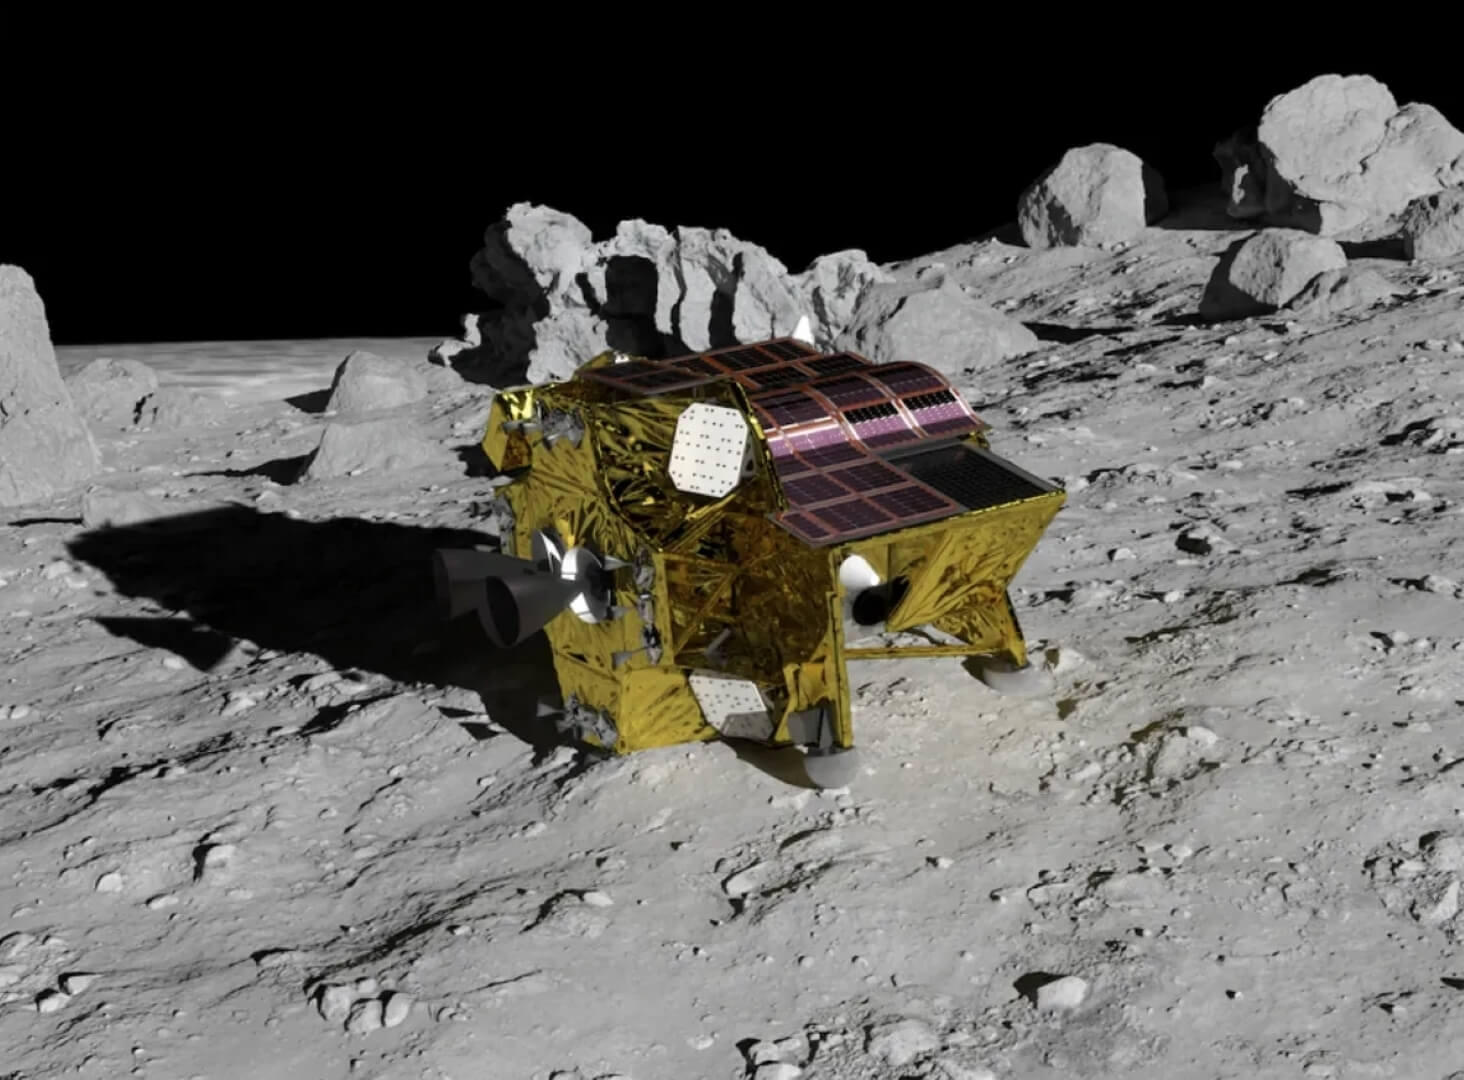 Япония посадила на Луну аппарат SLIM — это пятая страна на спутнике Земли. Японская межпланетная станция SLIM села на поверхность Луны, но реальных фотографий еще нет. Фото.